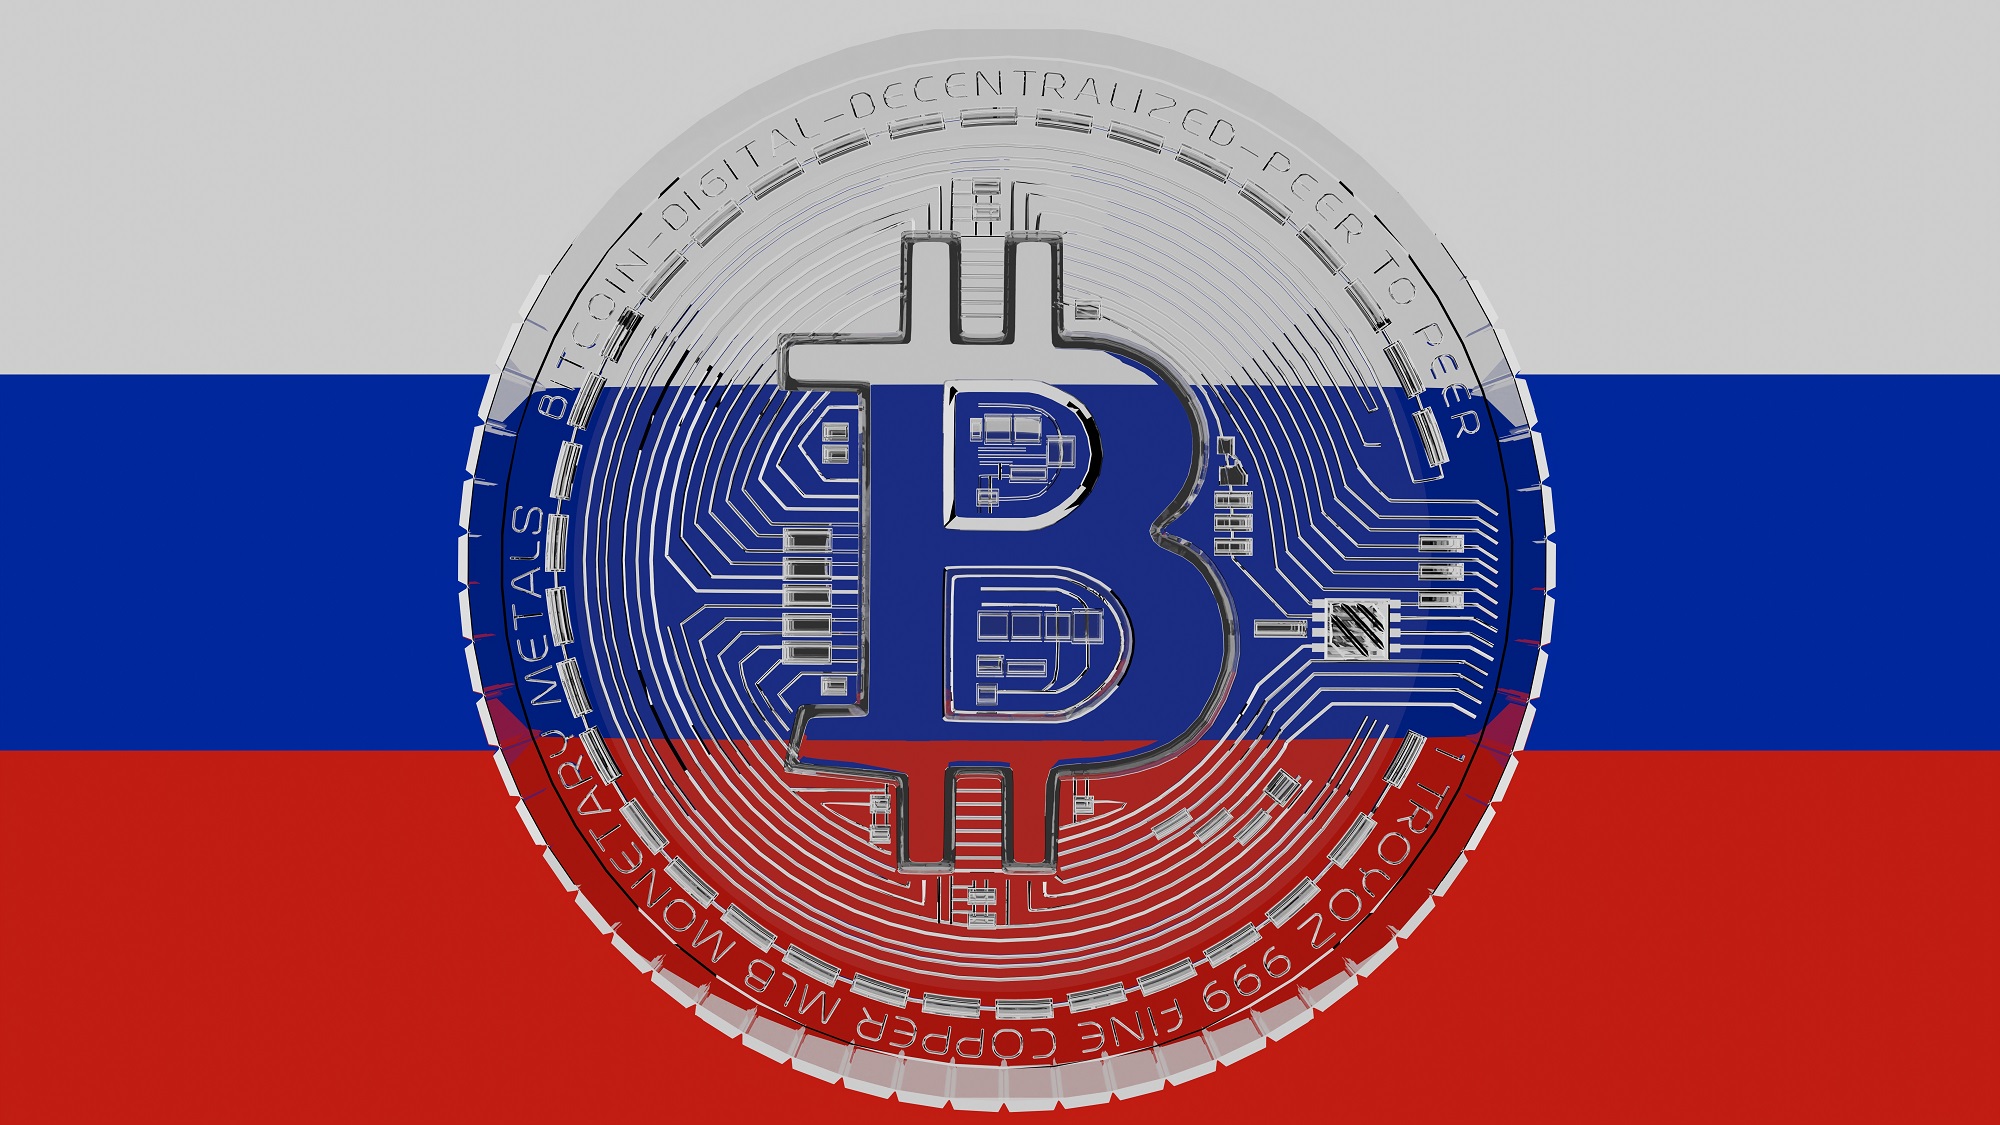 Rusya bayrağının önünde, ortada Bitcoin logosu bulunan şeffaf bir jeton.